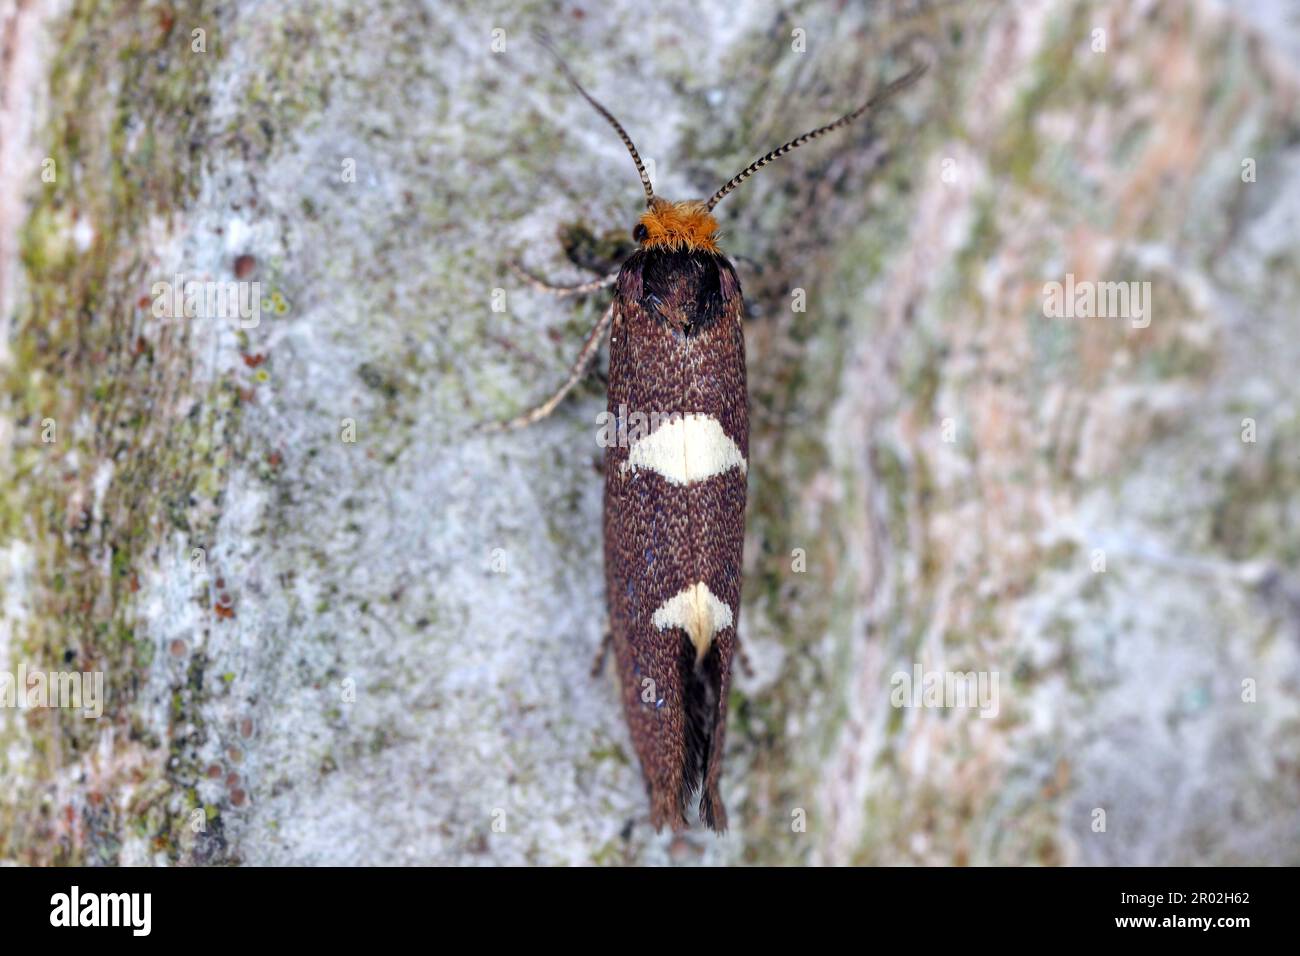 Gefiedertes Blattschneider (Incurvaria masculella), Motte der Familie Incurvariidae. Raupen sind Schädlinge, Parasiten vieler Pflanzen. Stockfoto